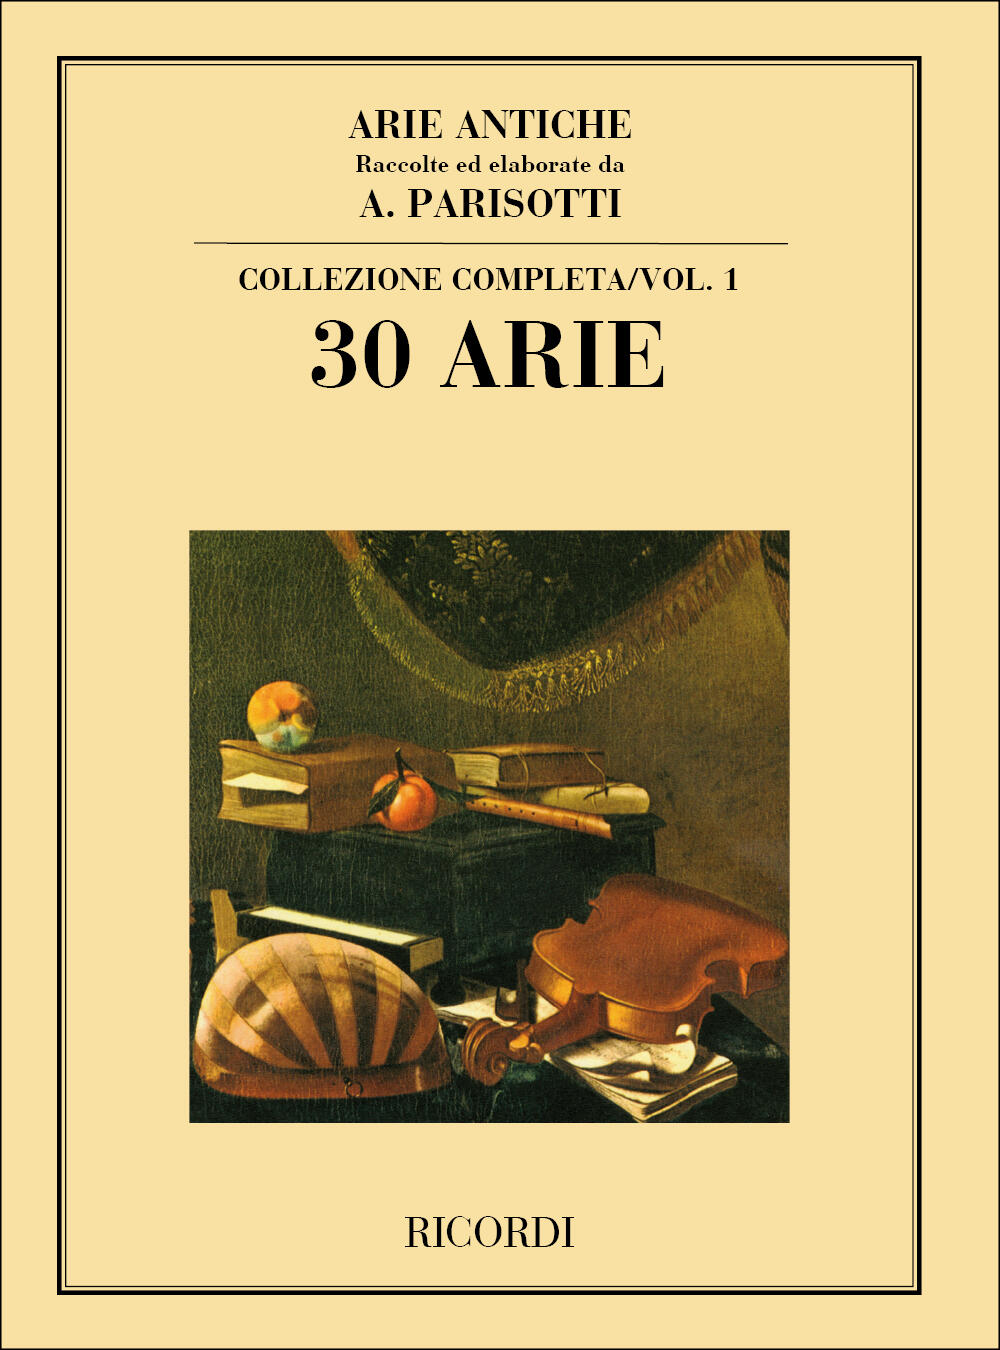 Ricordi Arie Antiche: 30 Arie Vol. 1 Raccolte ed elaborate da A. Parisotti - Collezione completa : photo 1